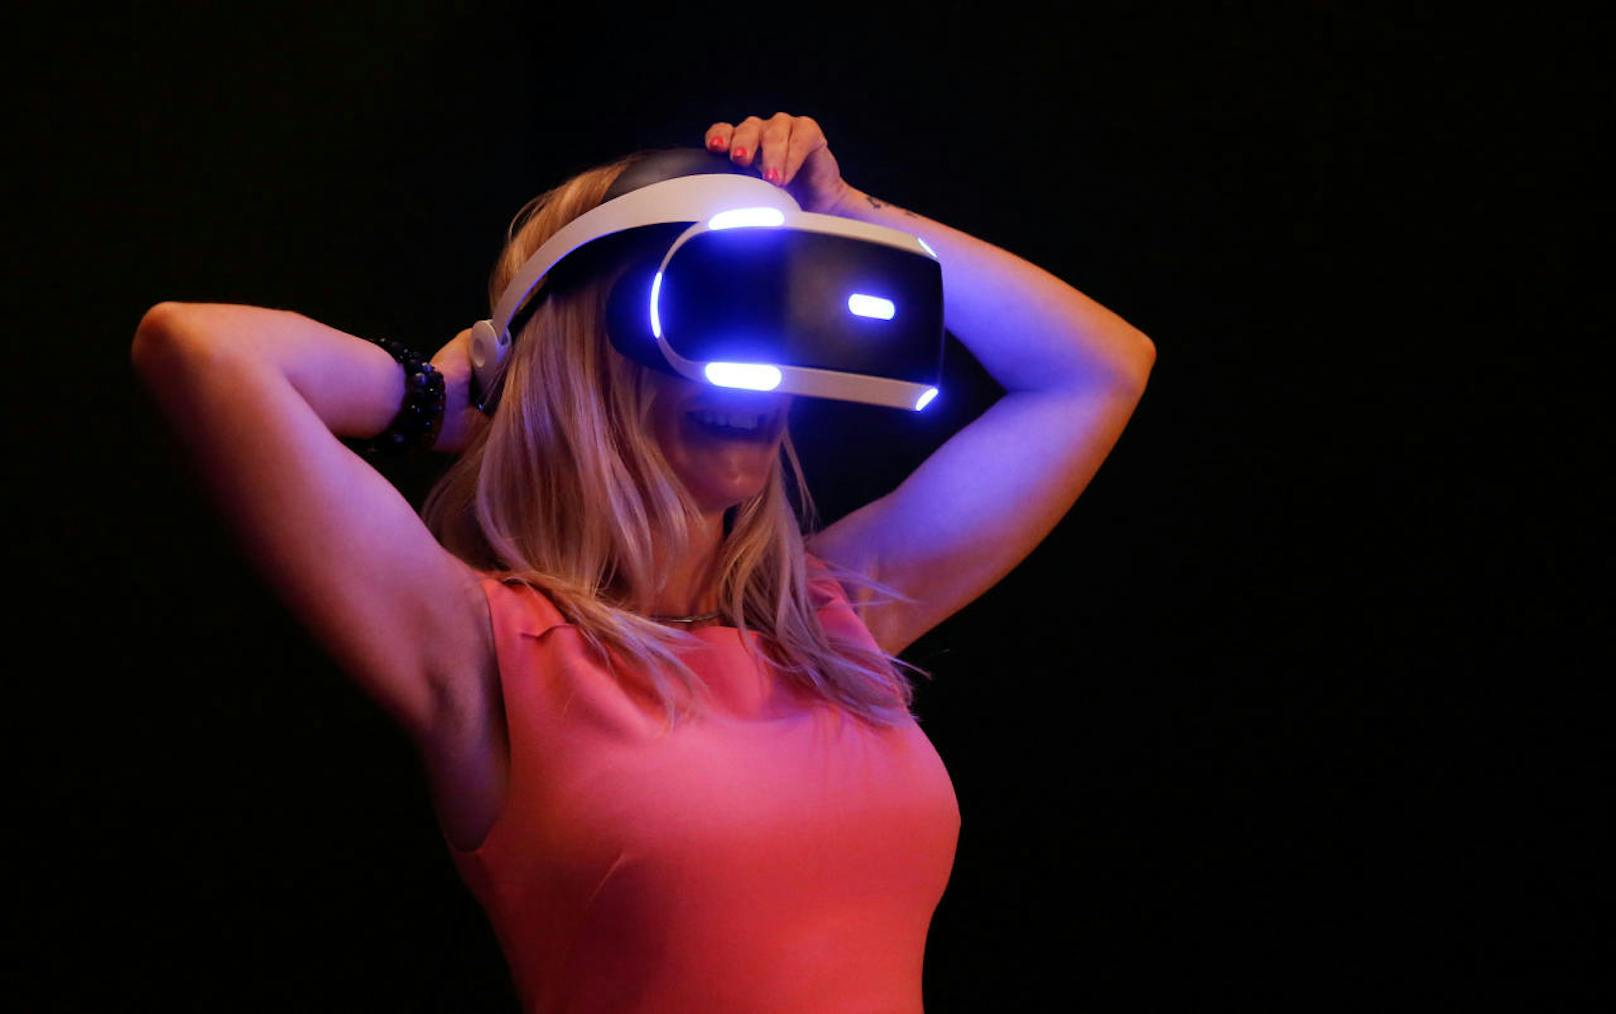 Branchenriese Sony setzt trotzdem voll auf VR-Games. Doch der Branche fehlt es an Blockbustern, die die neue Technologie pushen.